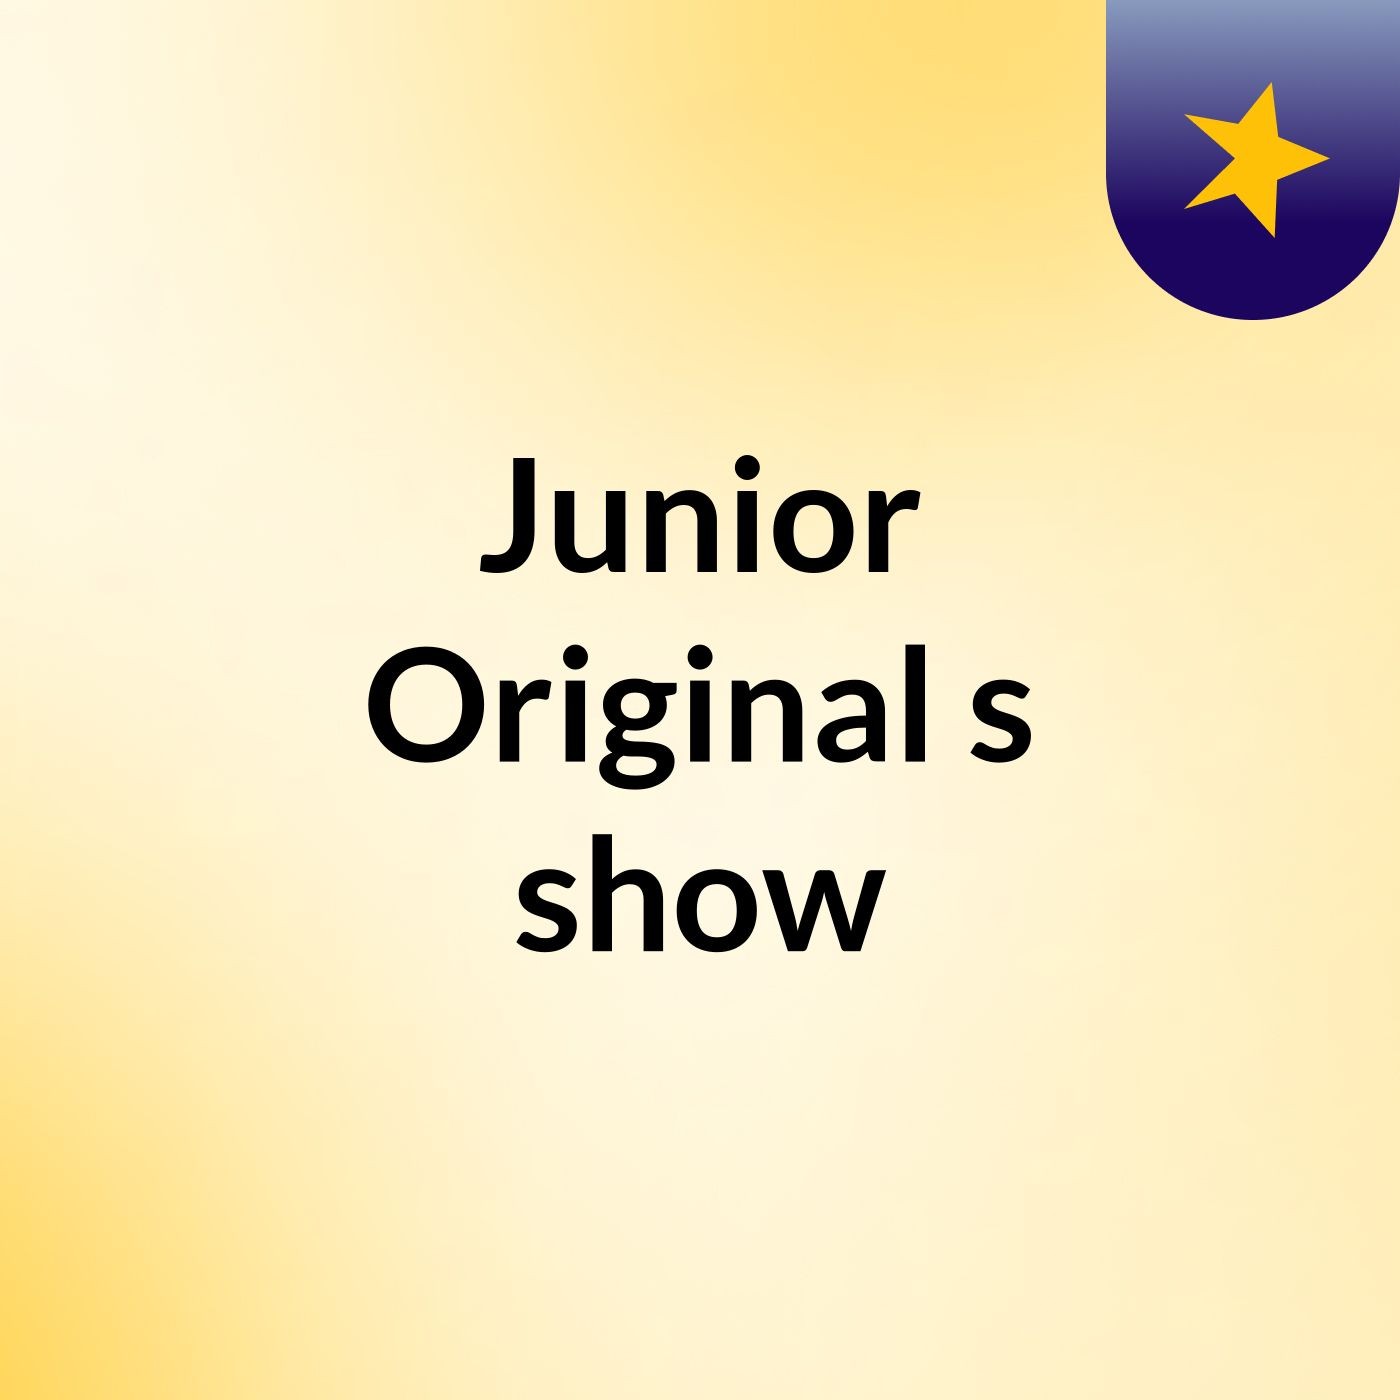 Junior Original's show